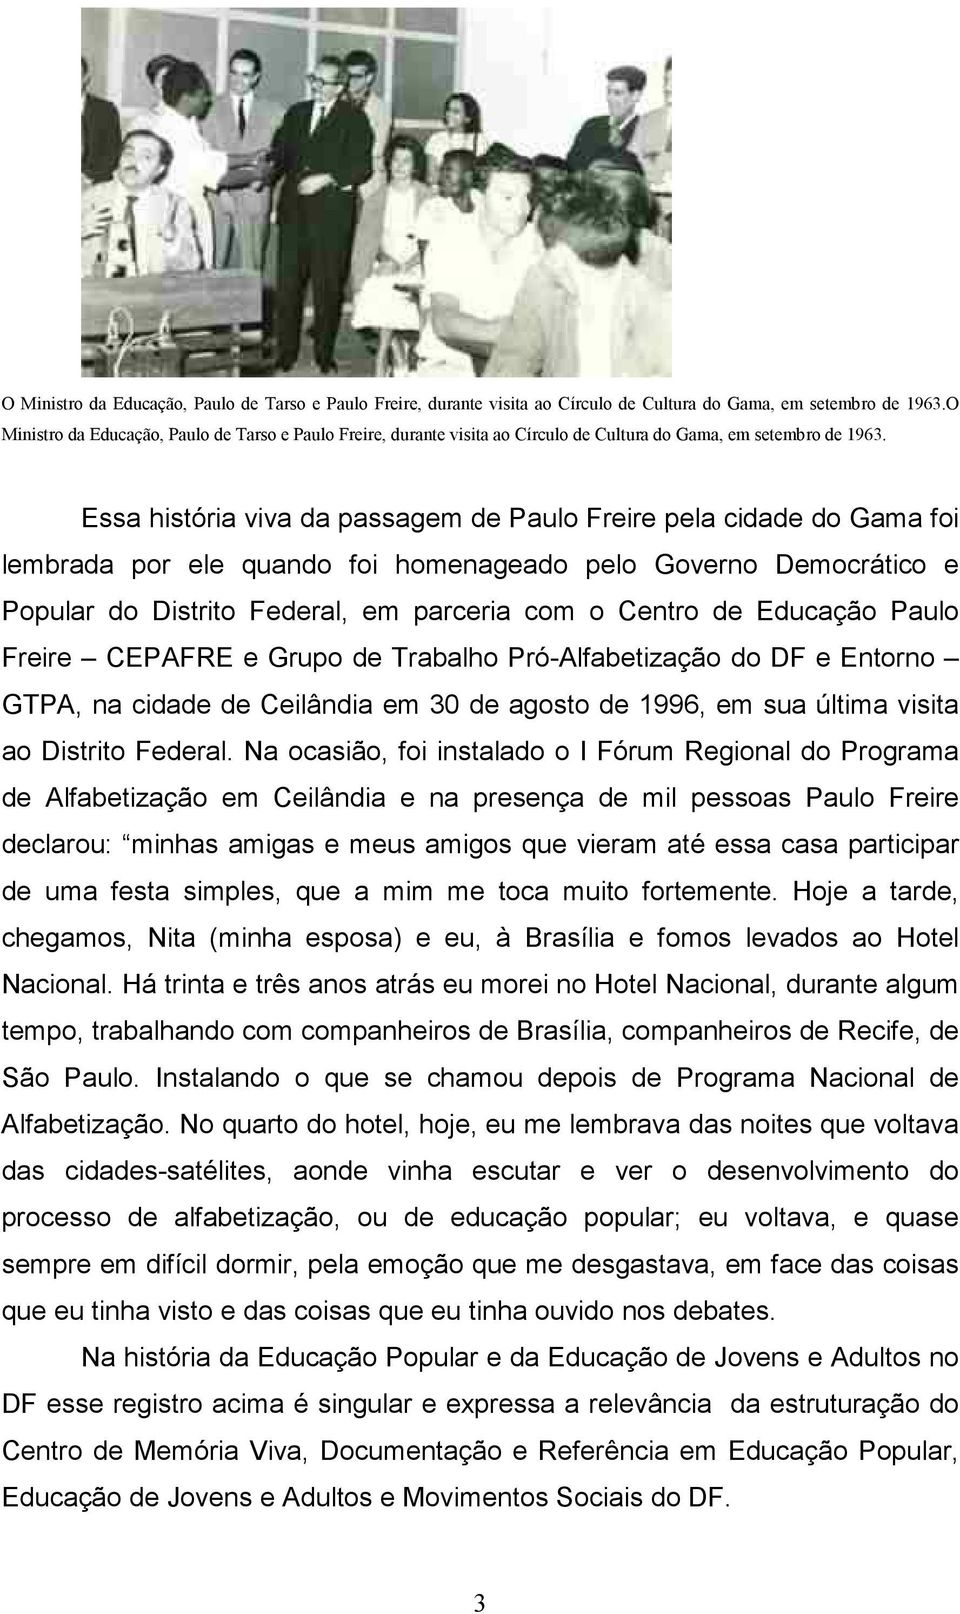 Educação Paulo Freire CEPAFRE e Grupo de Trabalho Pró-Alfabetização do DF e Entorno GTPA, na cidade de Ceilândia em 30 de agosto de 1996, em sua última visita ao Distrito Federal.